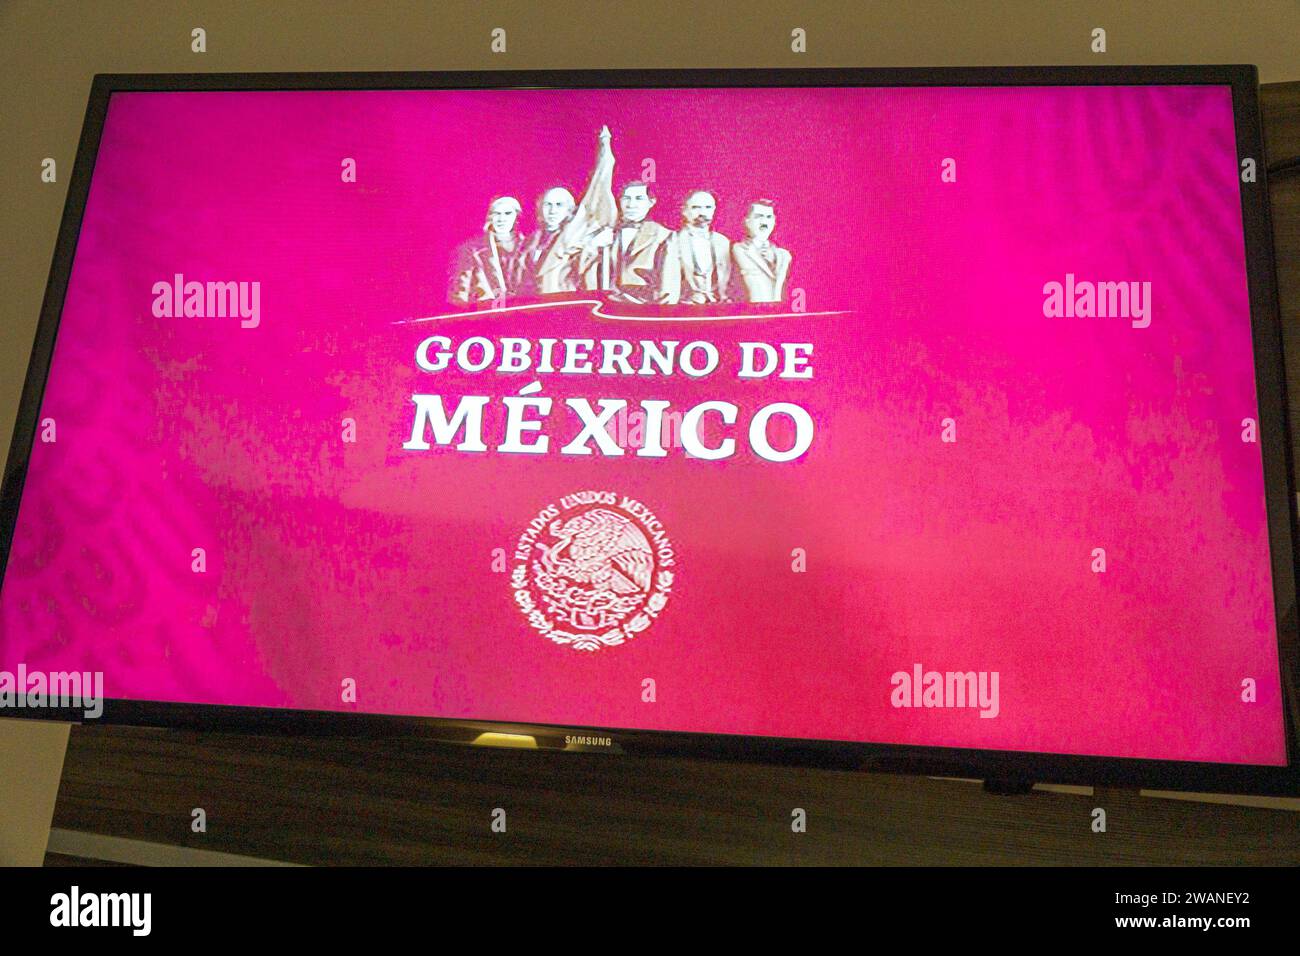 Merida Mexico, centro storico, schermo tv via cavo, annuncio governativo, ispanico messicano, latino-latino, spagnolo, spagnolo Foto Stock